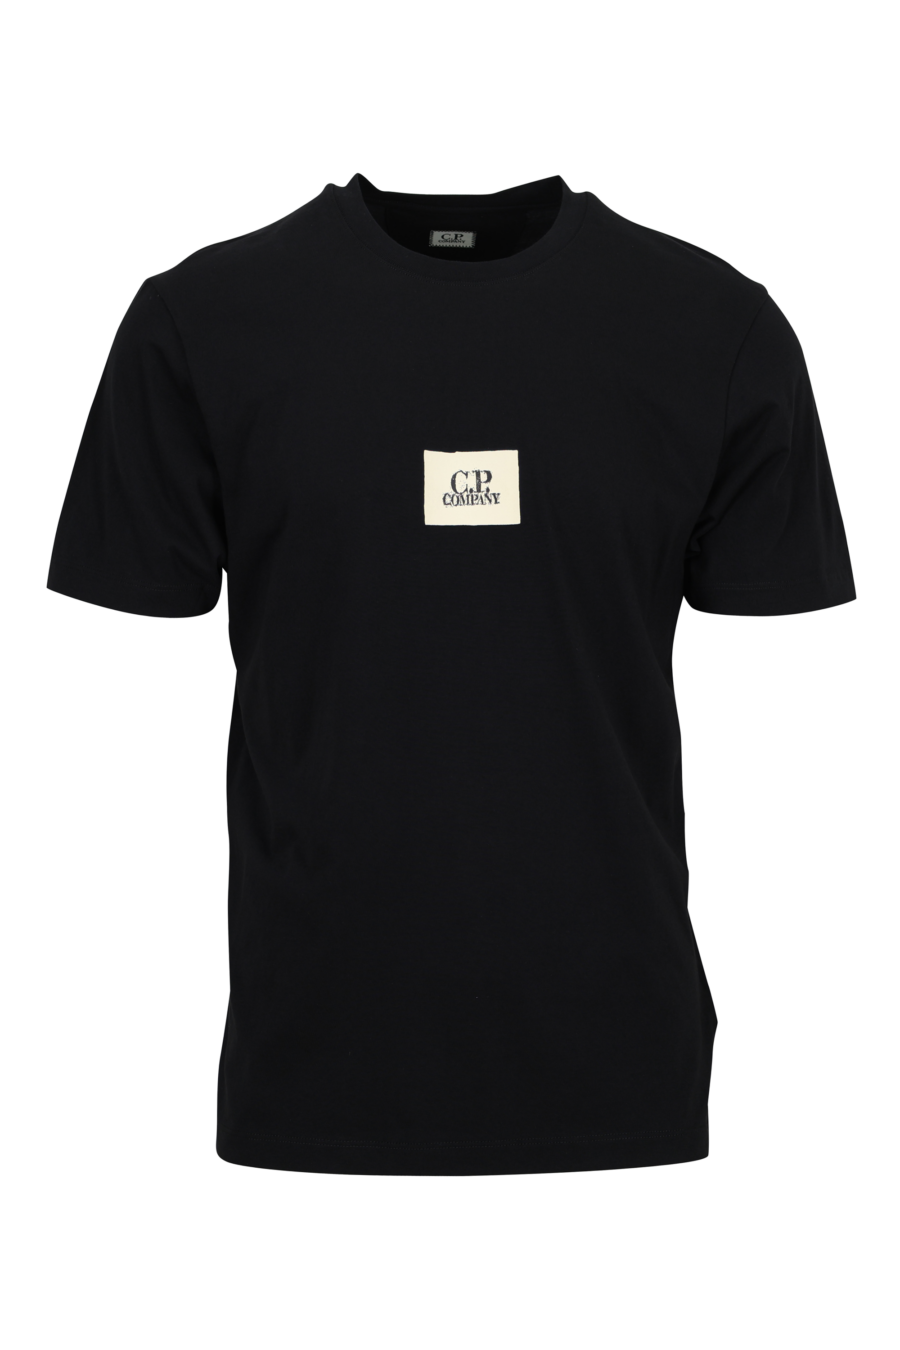 Camiseta negra con minilogo parche blanco "cp" centrado - 7620943764284